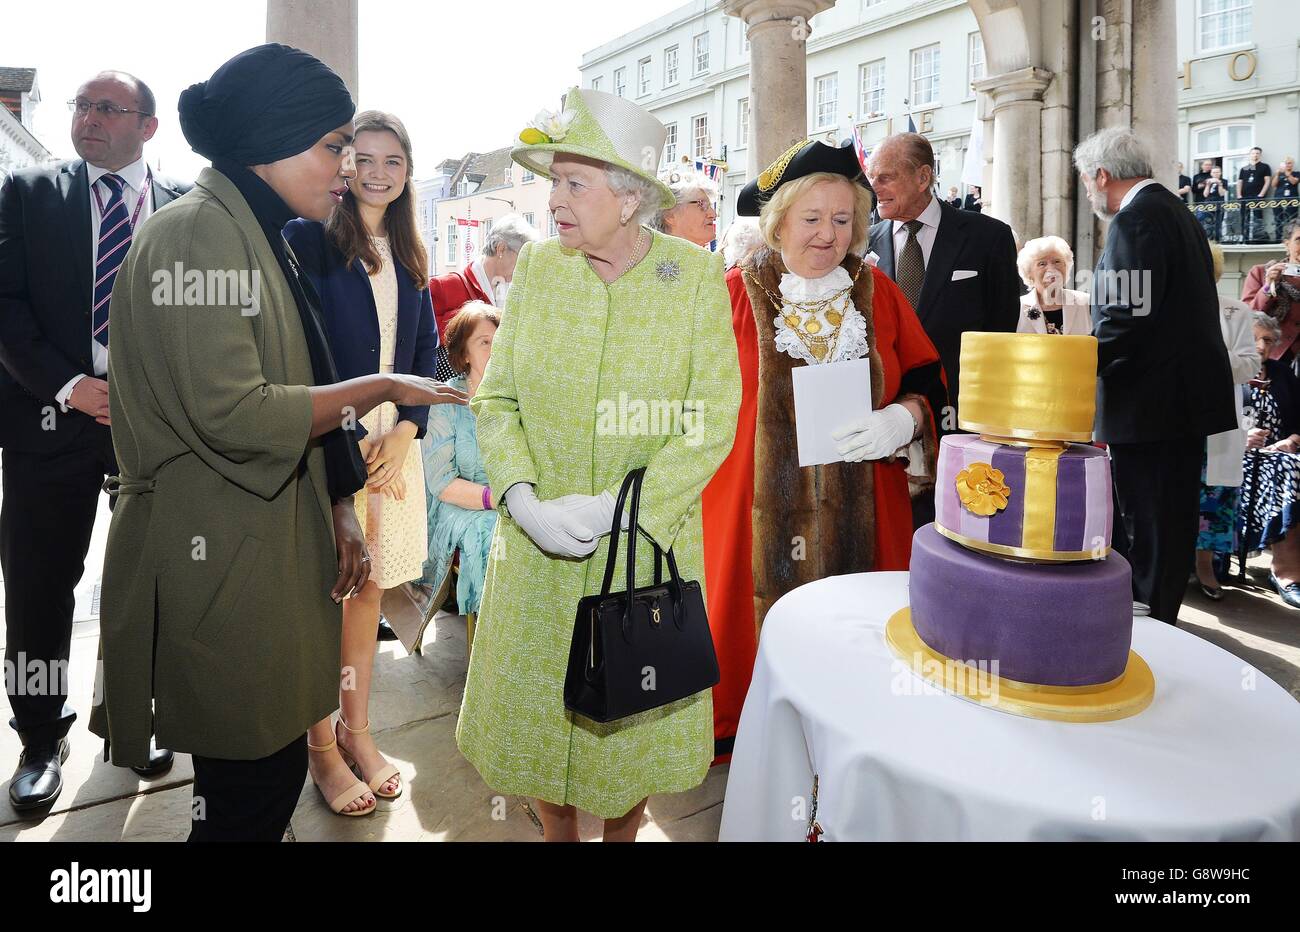 La regina Elisabetta II con Nadiya Hussain, vincitrice del Gran Bake britannico che ha cucinato una torta per lei, durante una passeggiata vicino al Castello di Windsor nel Berkshire mentre celebra il suo 90° compleanno. Foto Stock